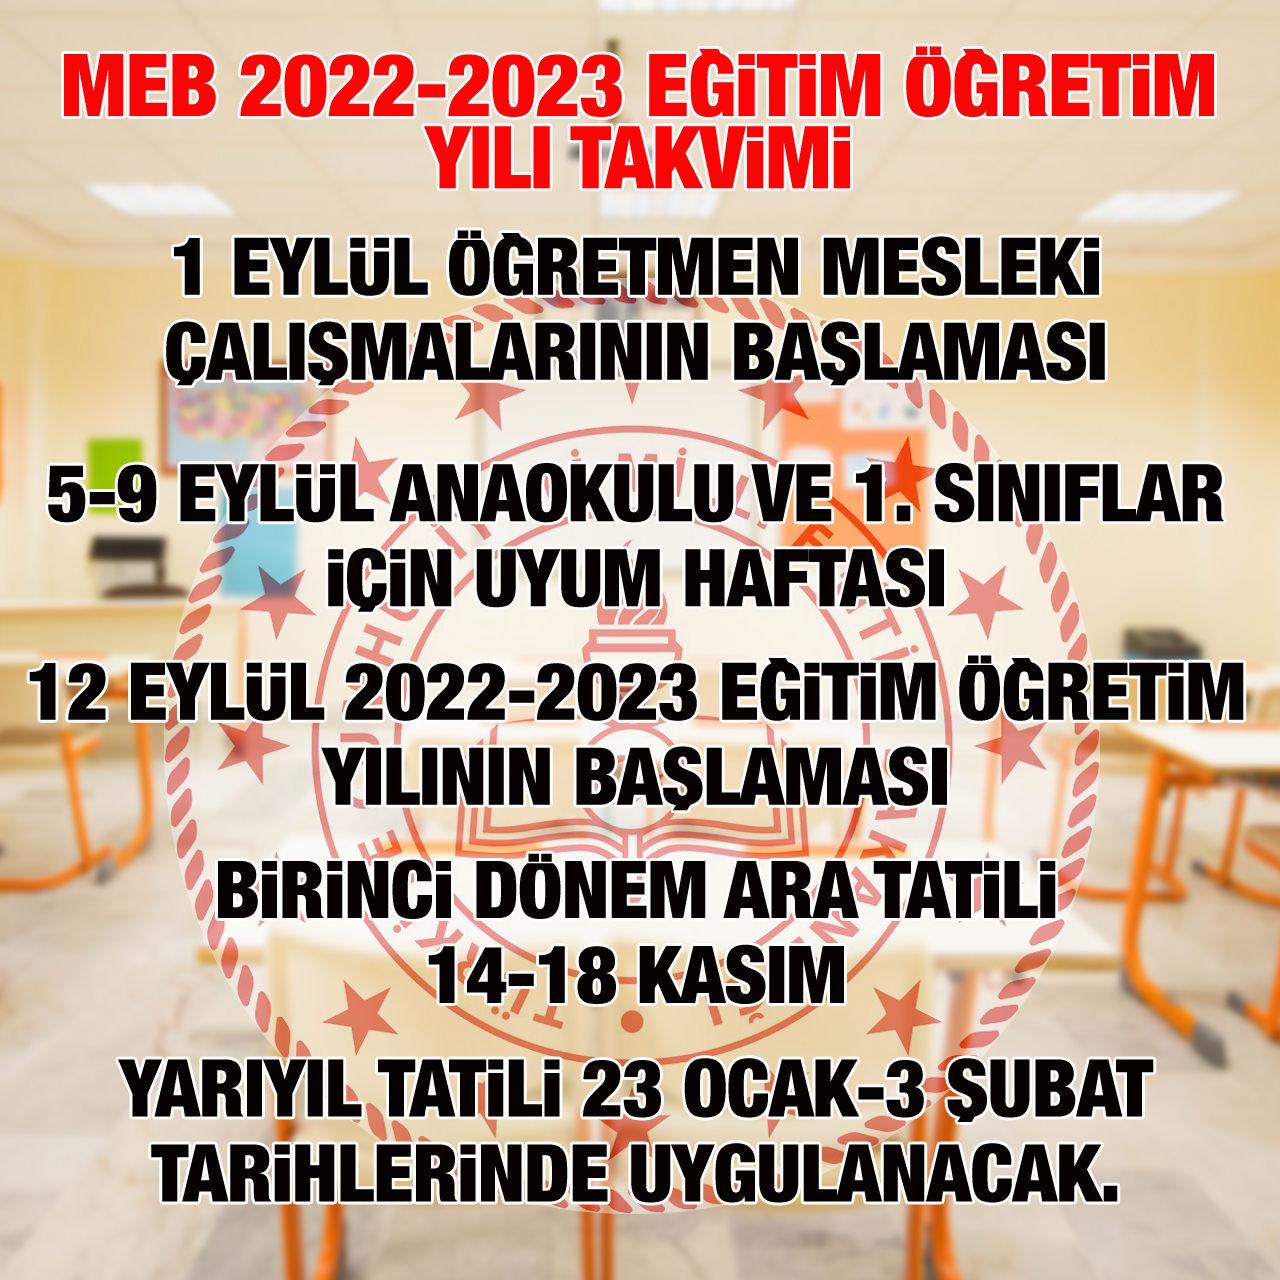 MEB 2022-2023 eğitim öğretim yılı takvimi